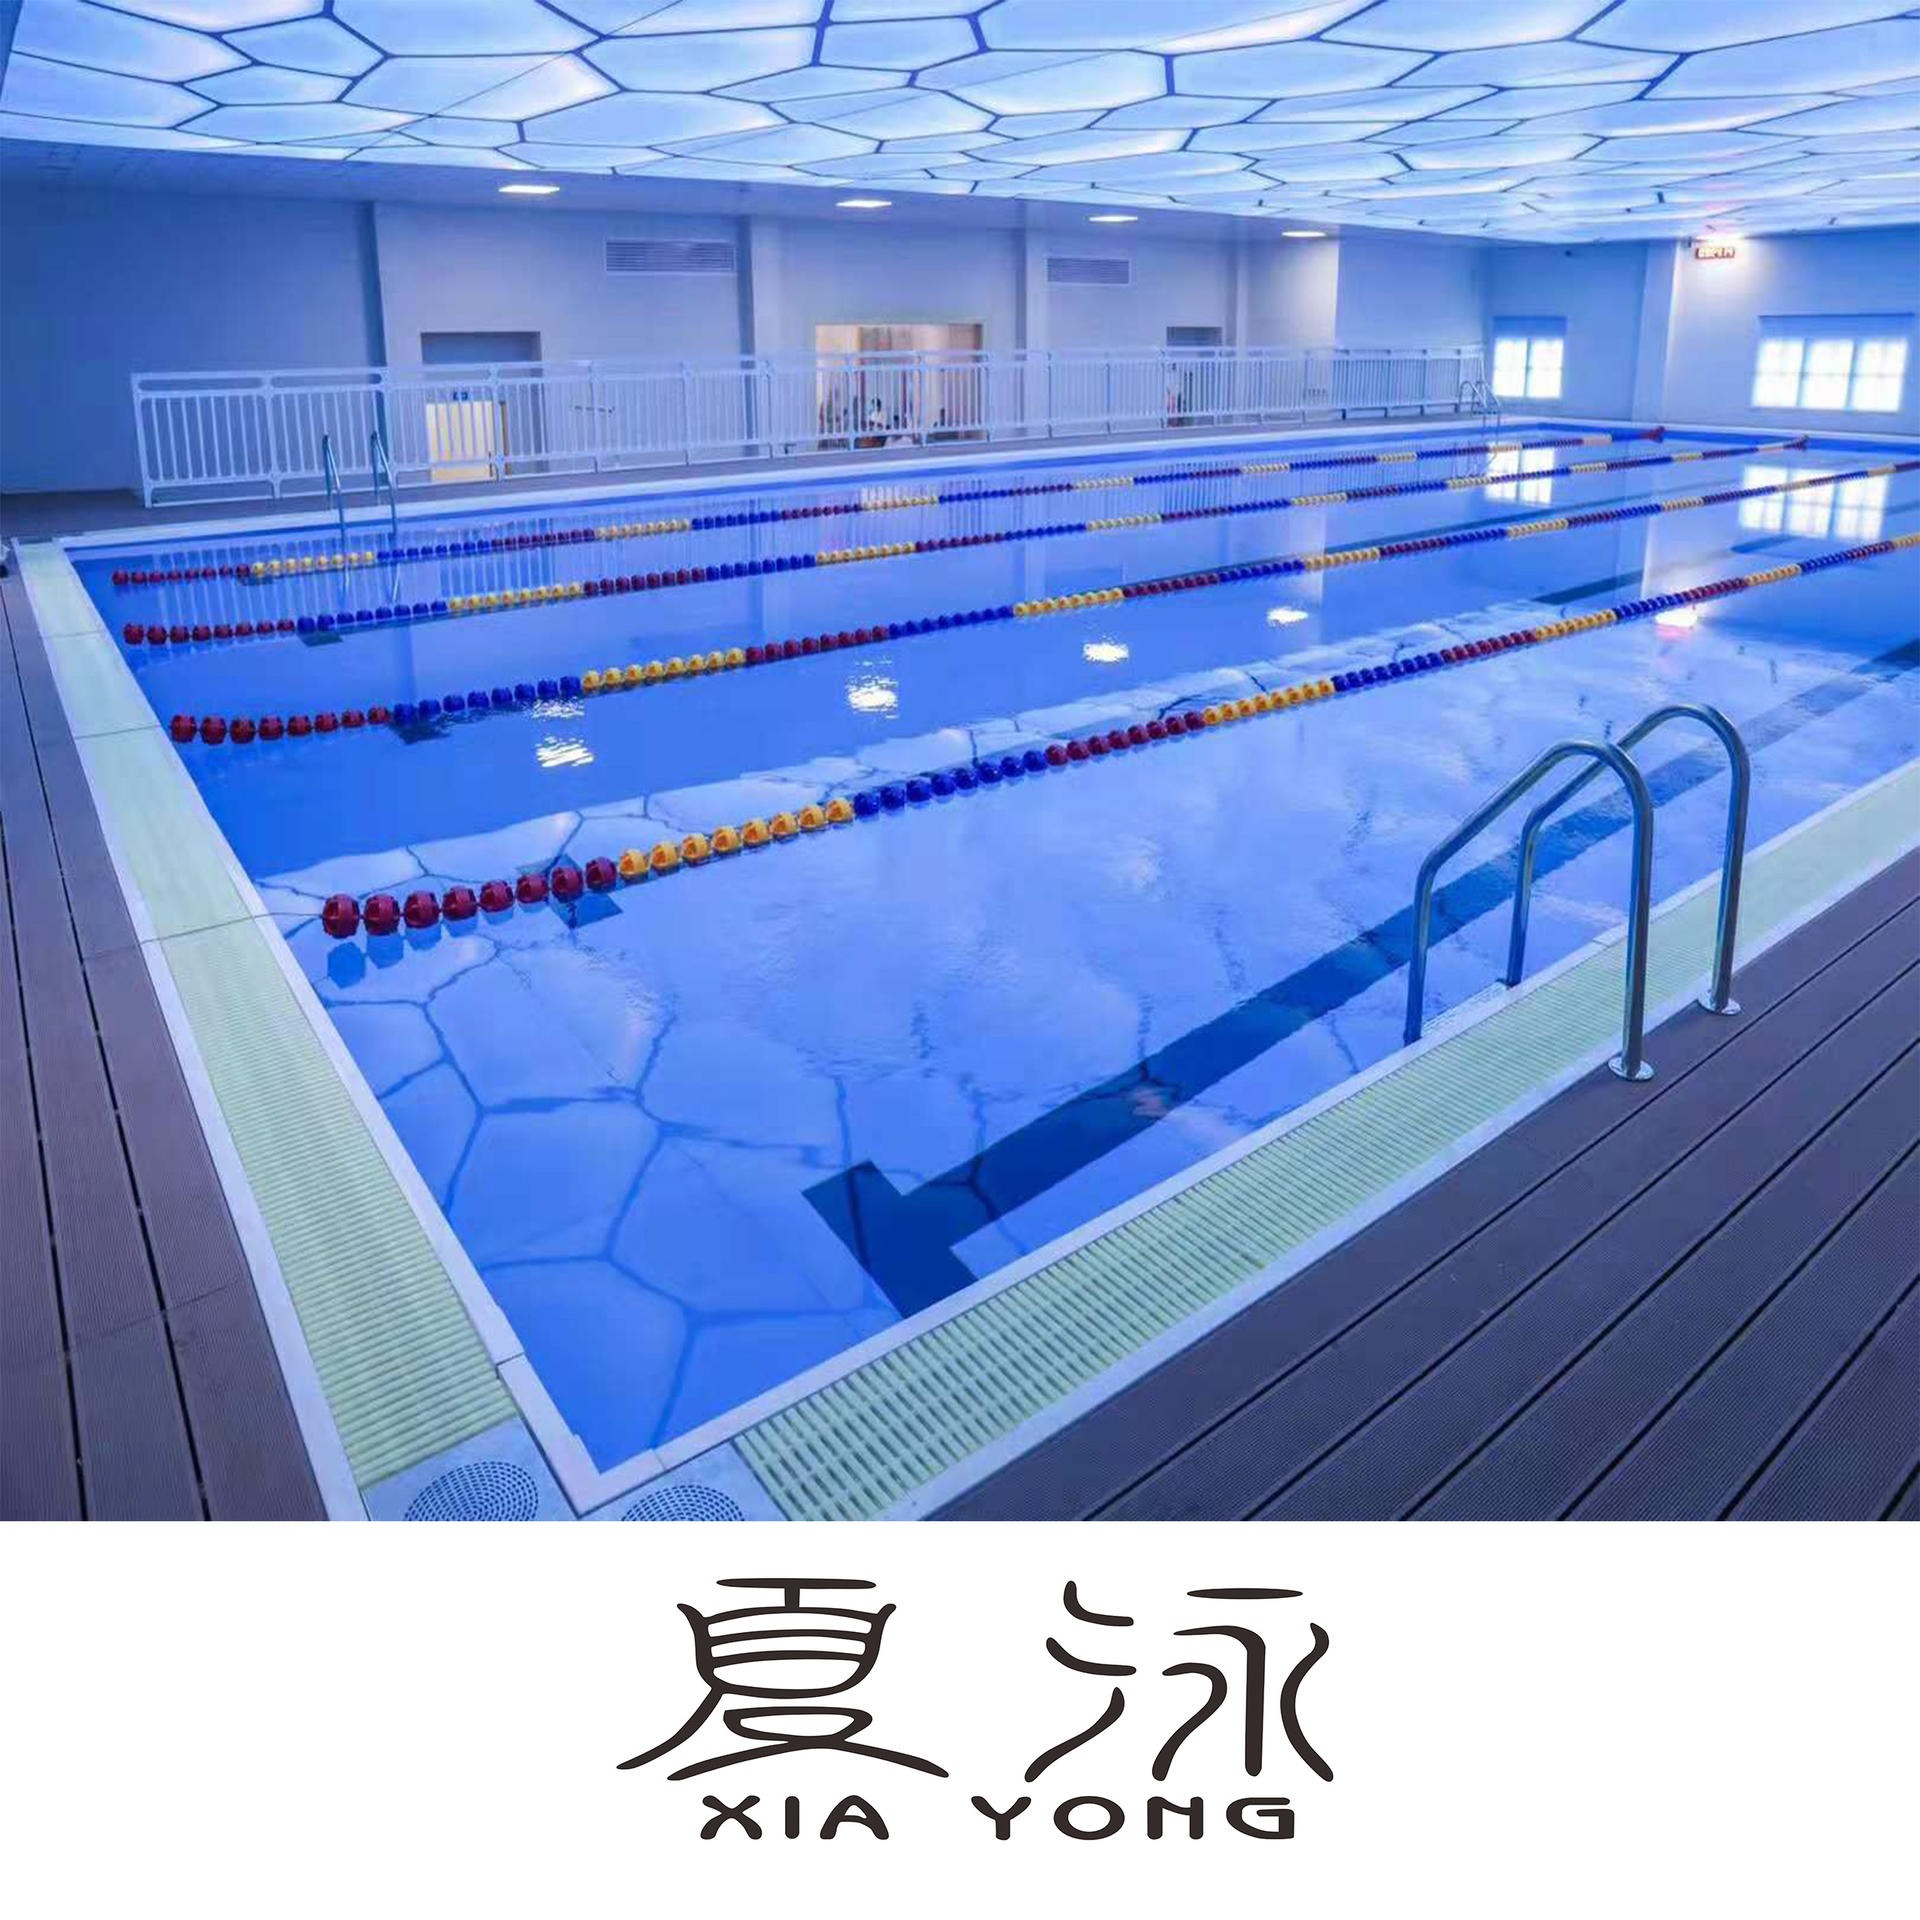 整体游泳池 广东省深圳市钢结构拼装式泳池 健身房泳池 拆装式泳池